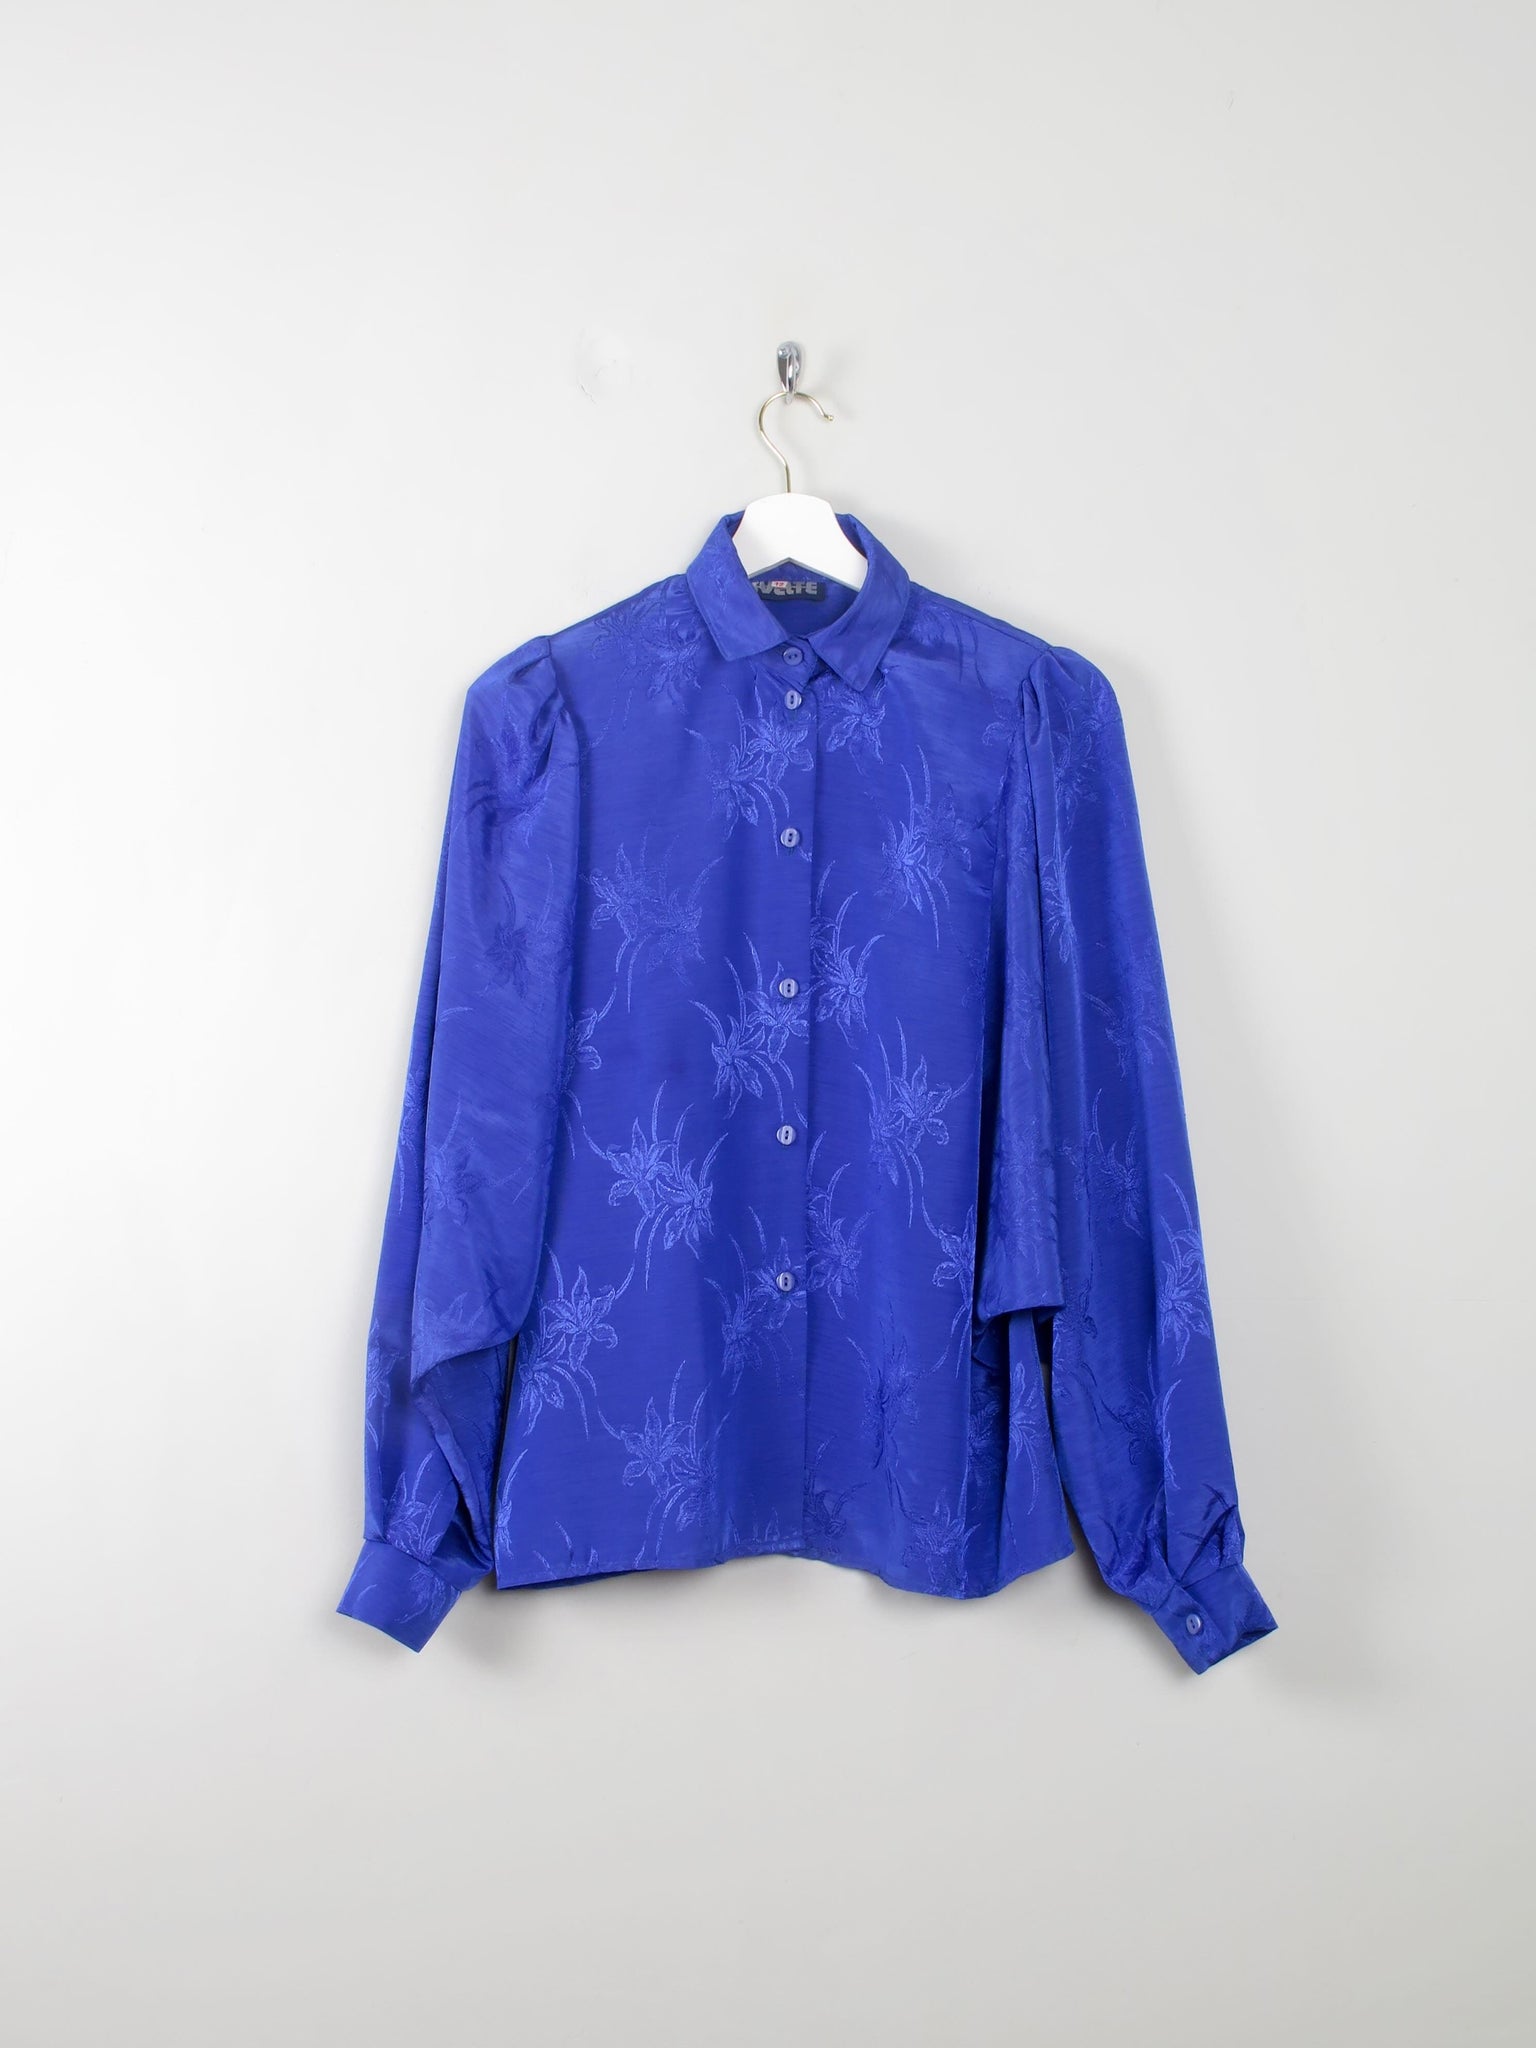 Vintage Blue Patterned Blouse S - The Harlequin